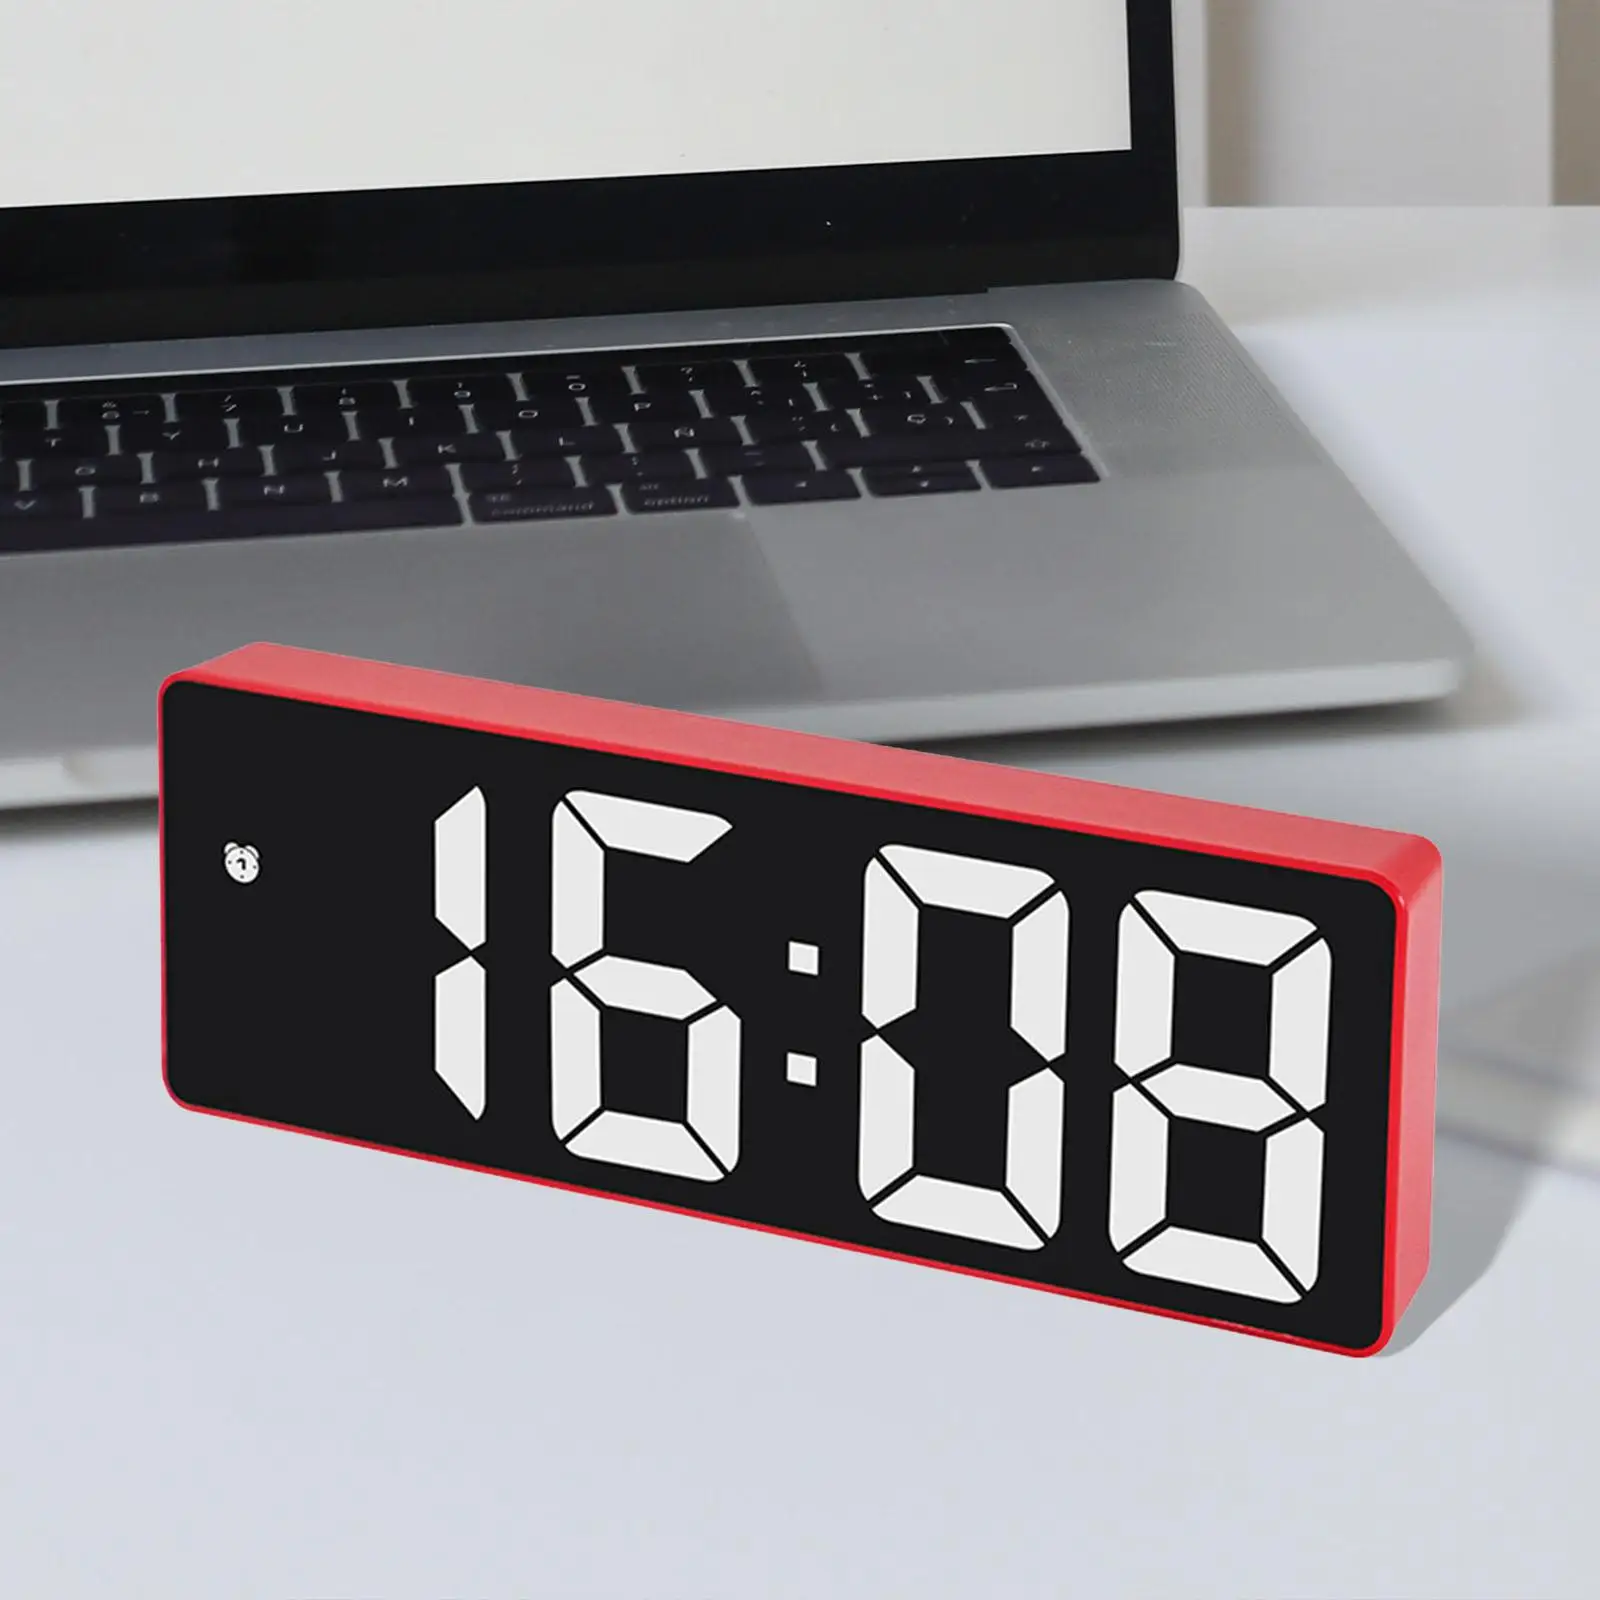 Digital Alarm Clock Large Display Adjustable Brightness with Snooze for Desktop Office Kids